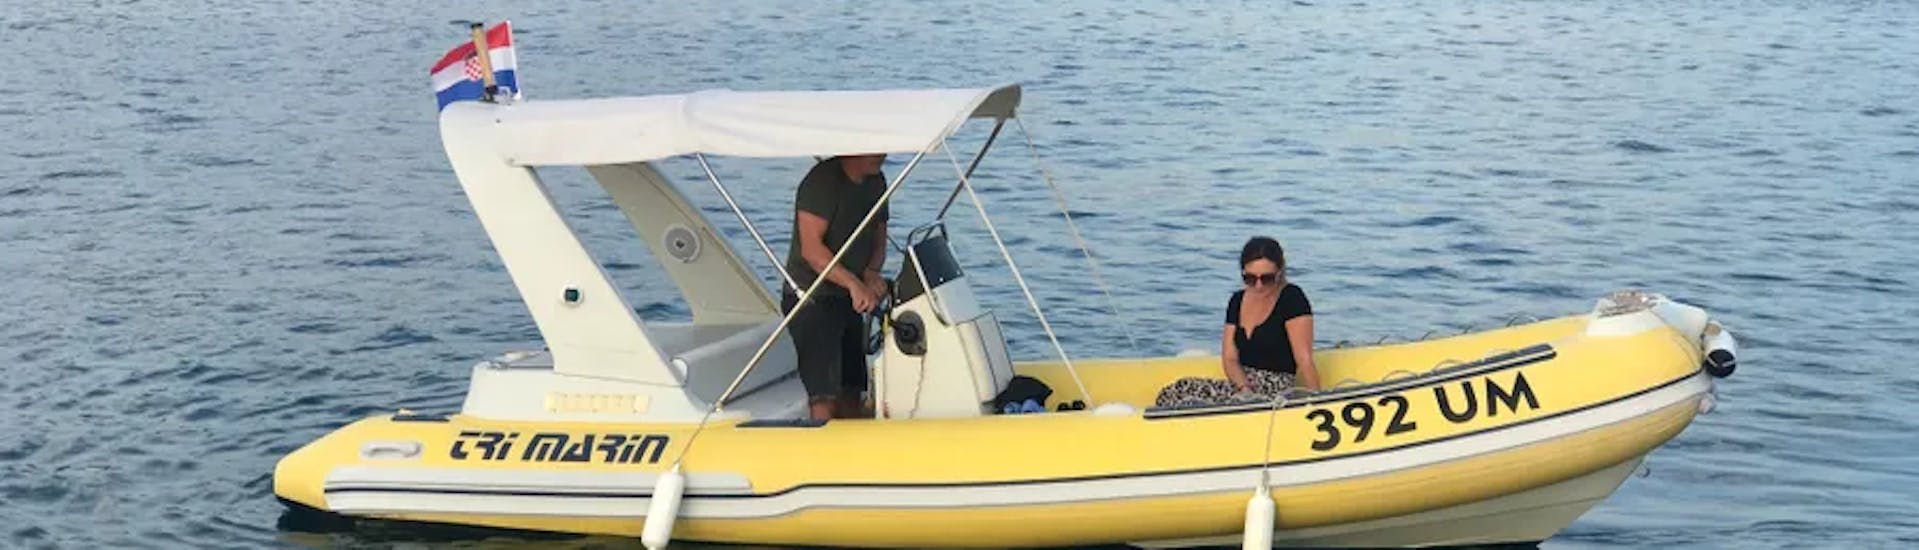 Due persone sulla barca del nostro Noleggio barca a Umago (fino a 8 persone) con Action & Fun Umag.